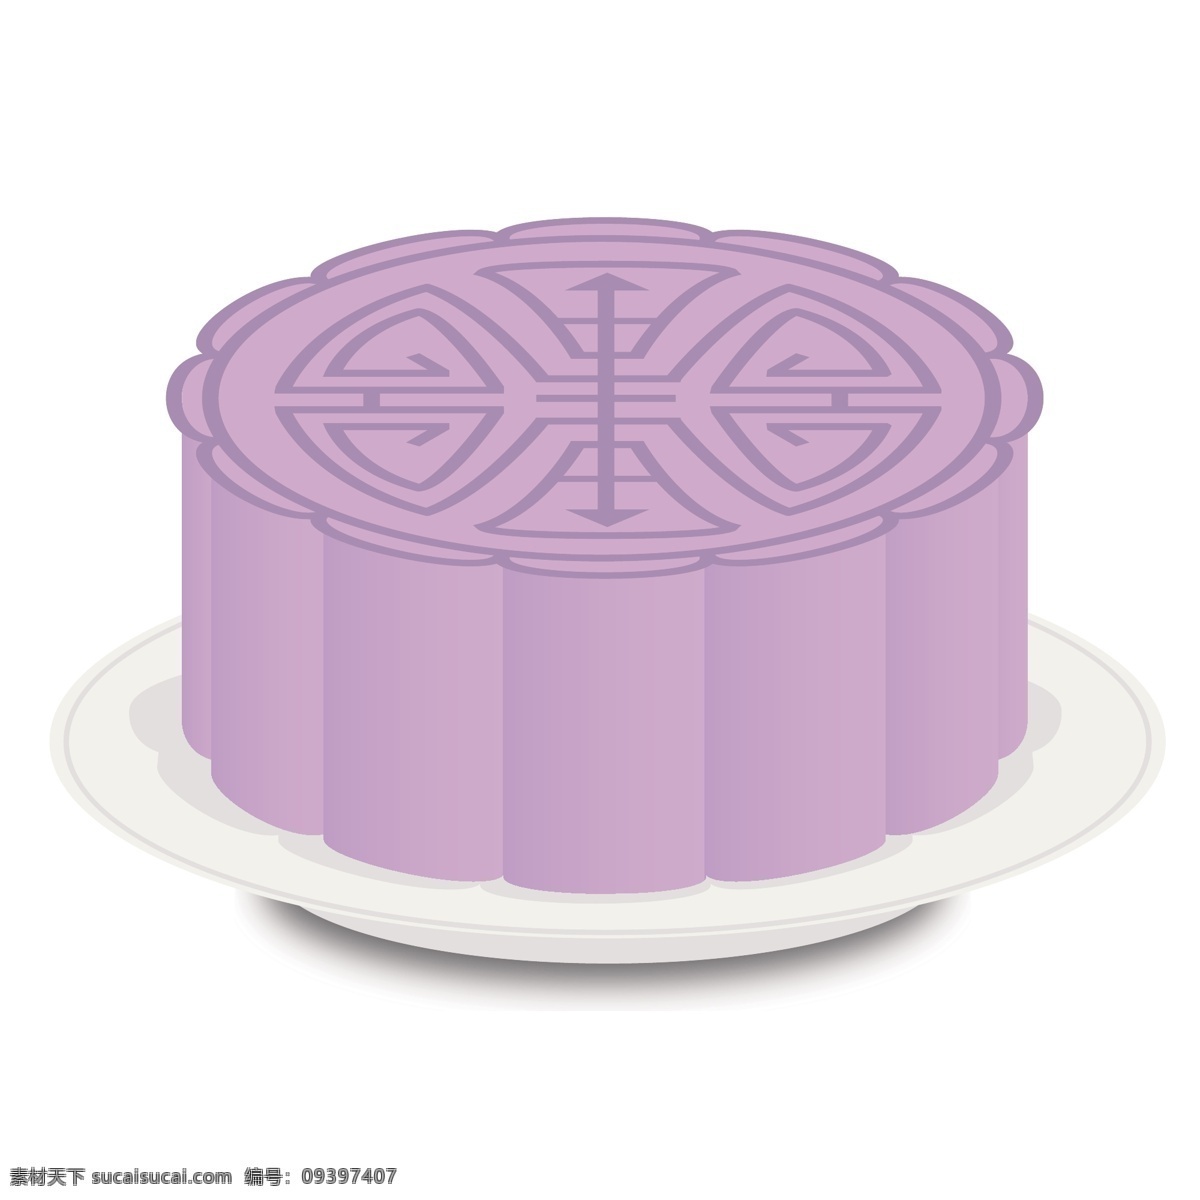 矢量图 卡通 紫色 中秋节 月饼 美食 中秋 团圆 八月十五 中秋食物 甜品